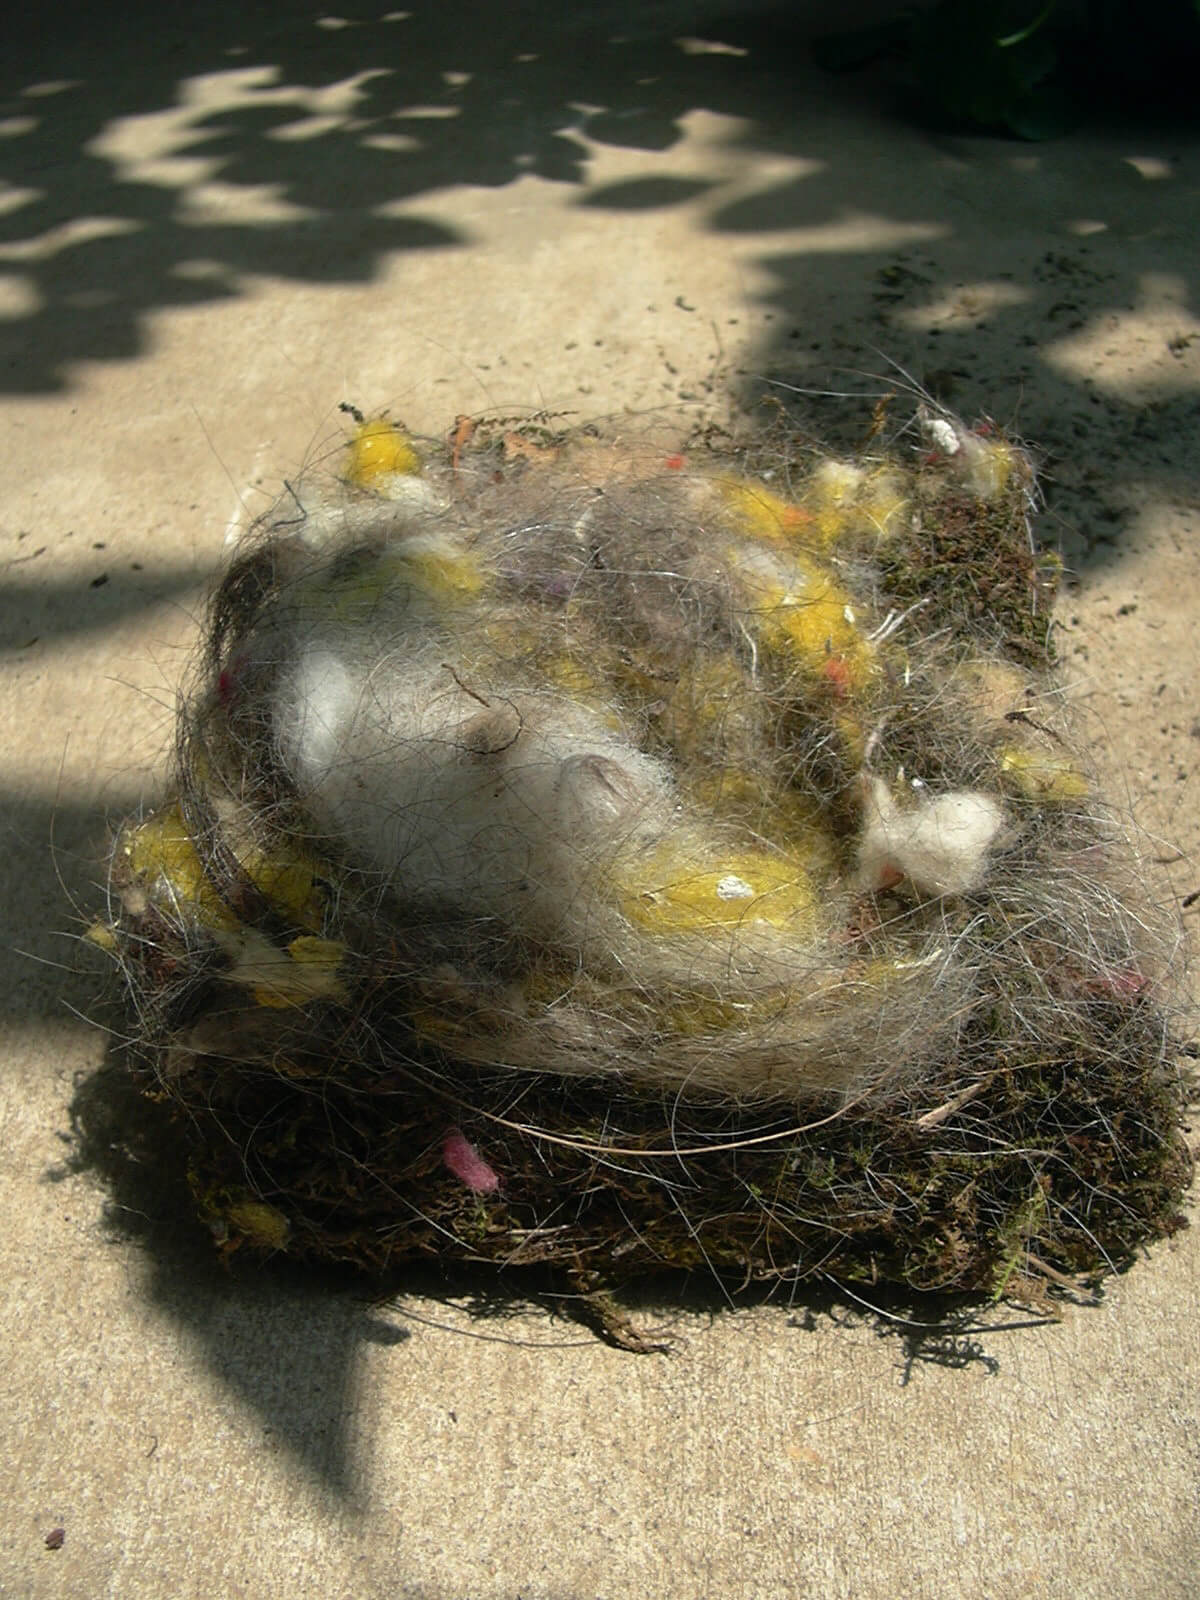 シジュウカラが巣立ちして空き巣になった巣箱から巣を取り出しました